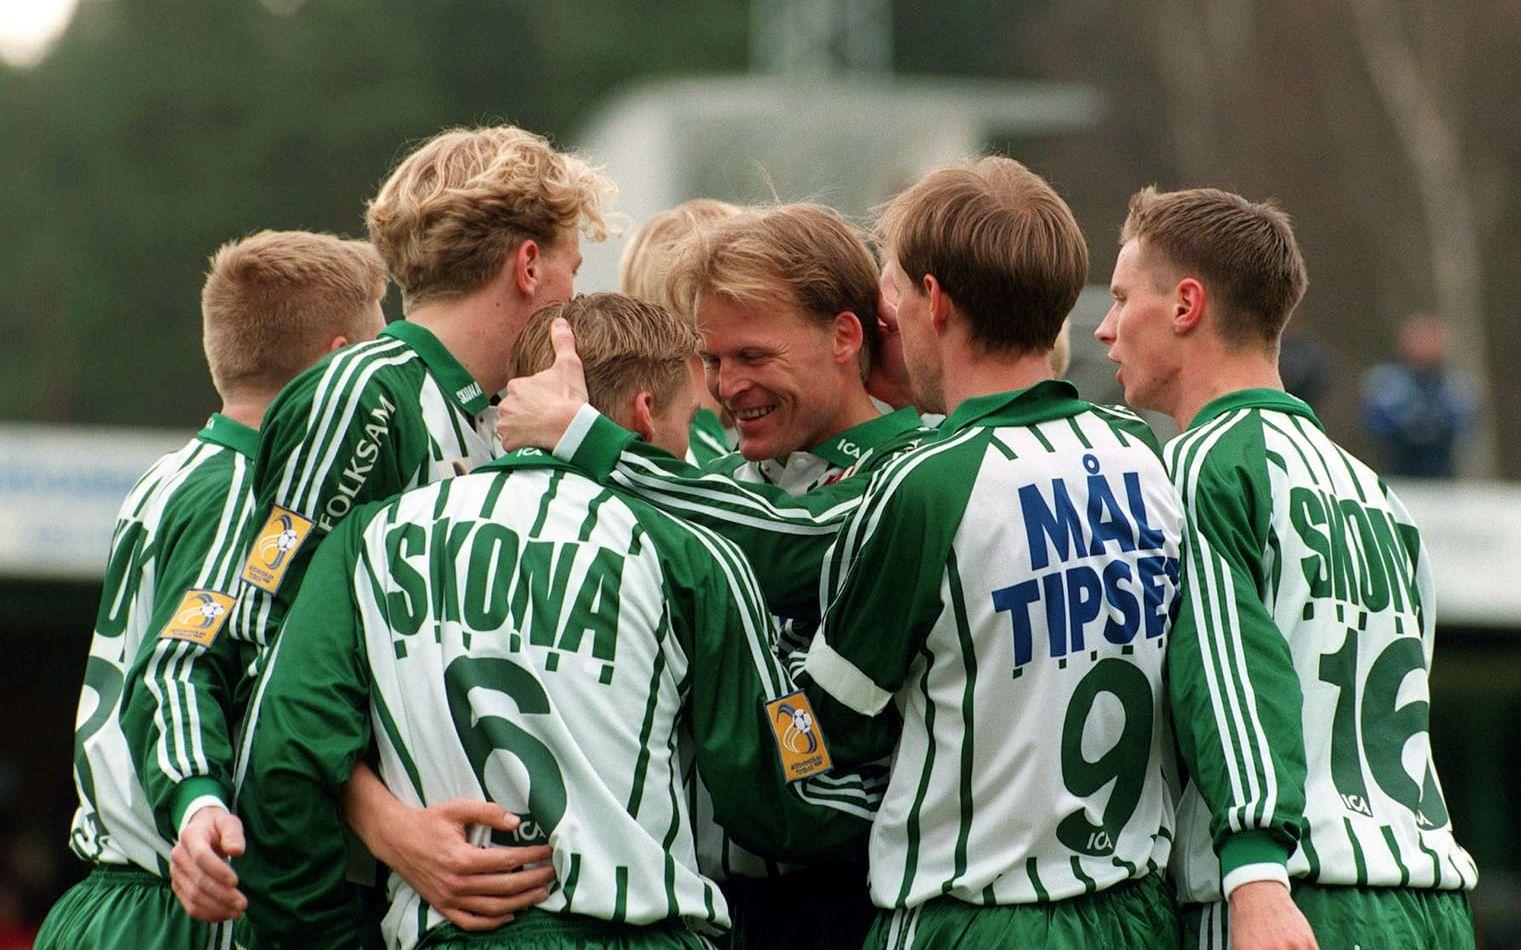 1998 slutade Västra Frölunda femma i allsvenskan och blev med det bästa laget i Göteborg. Arkivbild: Bildbyrån